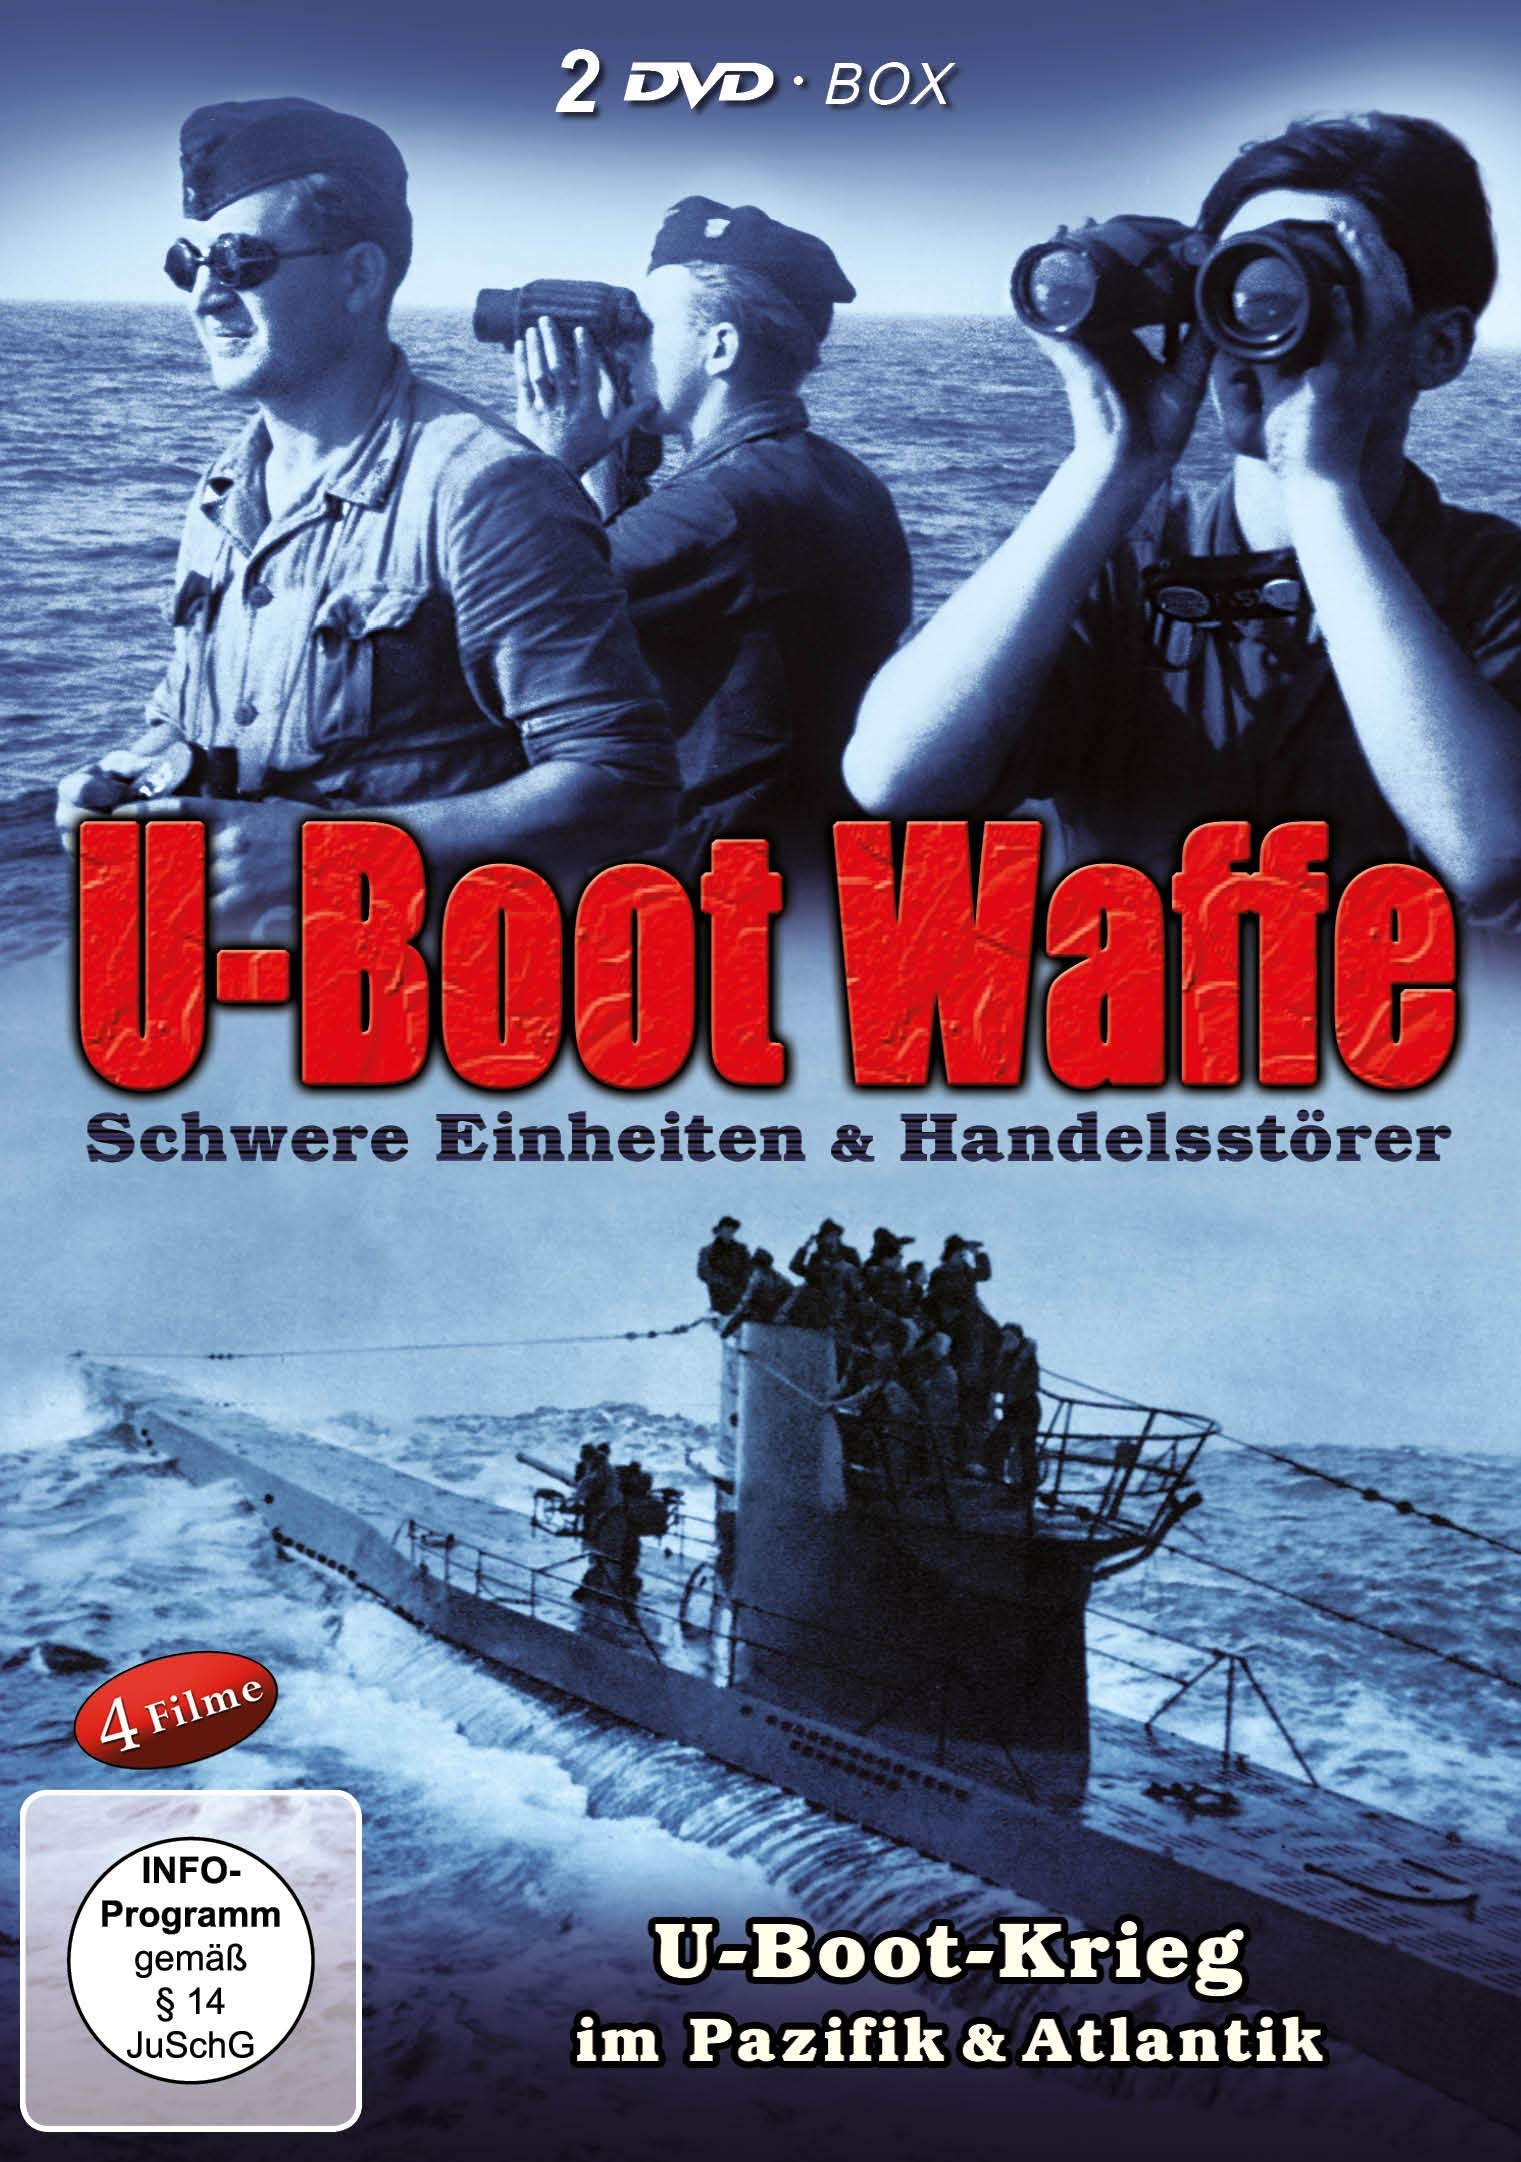 U-Boot Waffe-Deutsche U-Boote im 2. Weltkrieg - Das Boot - Die Grauen Wölfe (2 DVD Schuber)